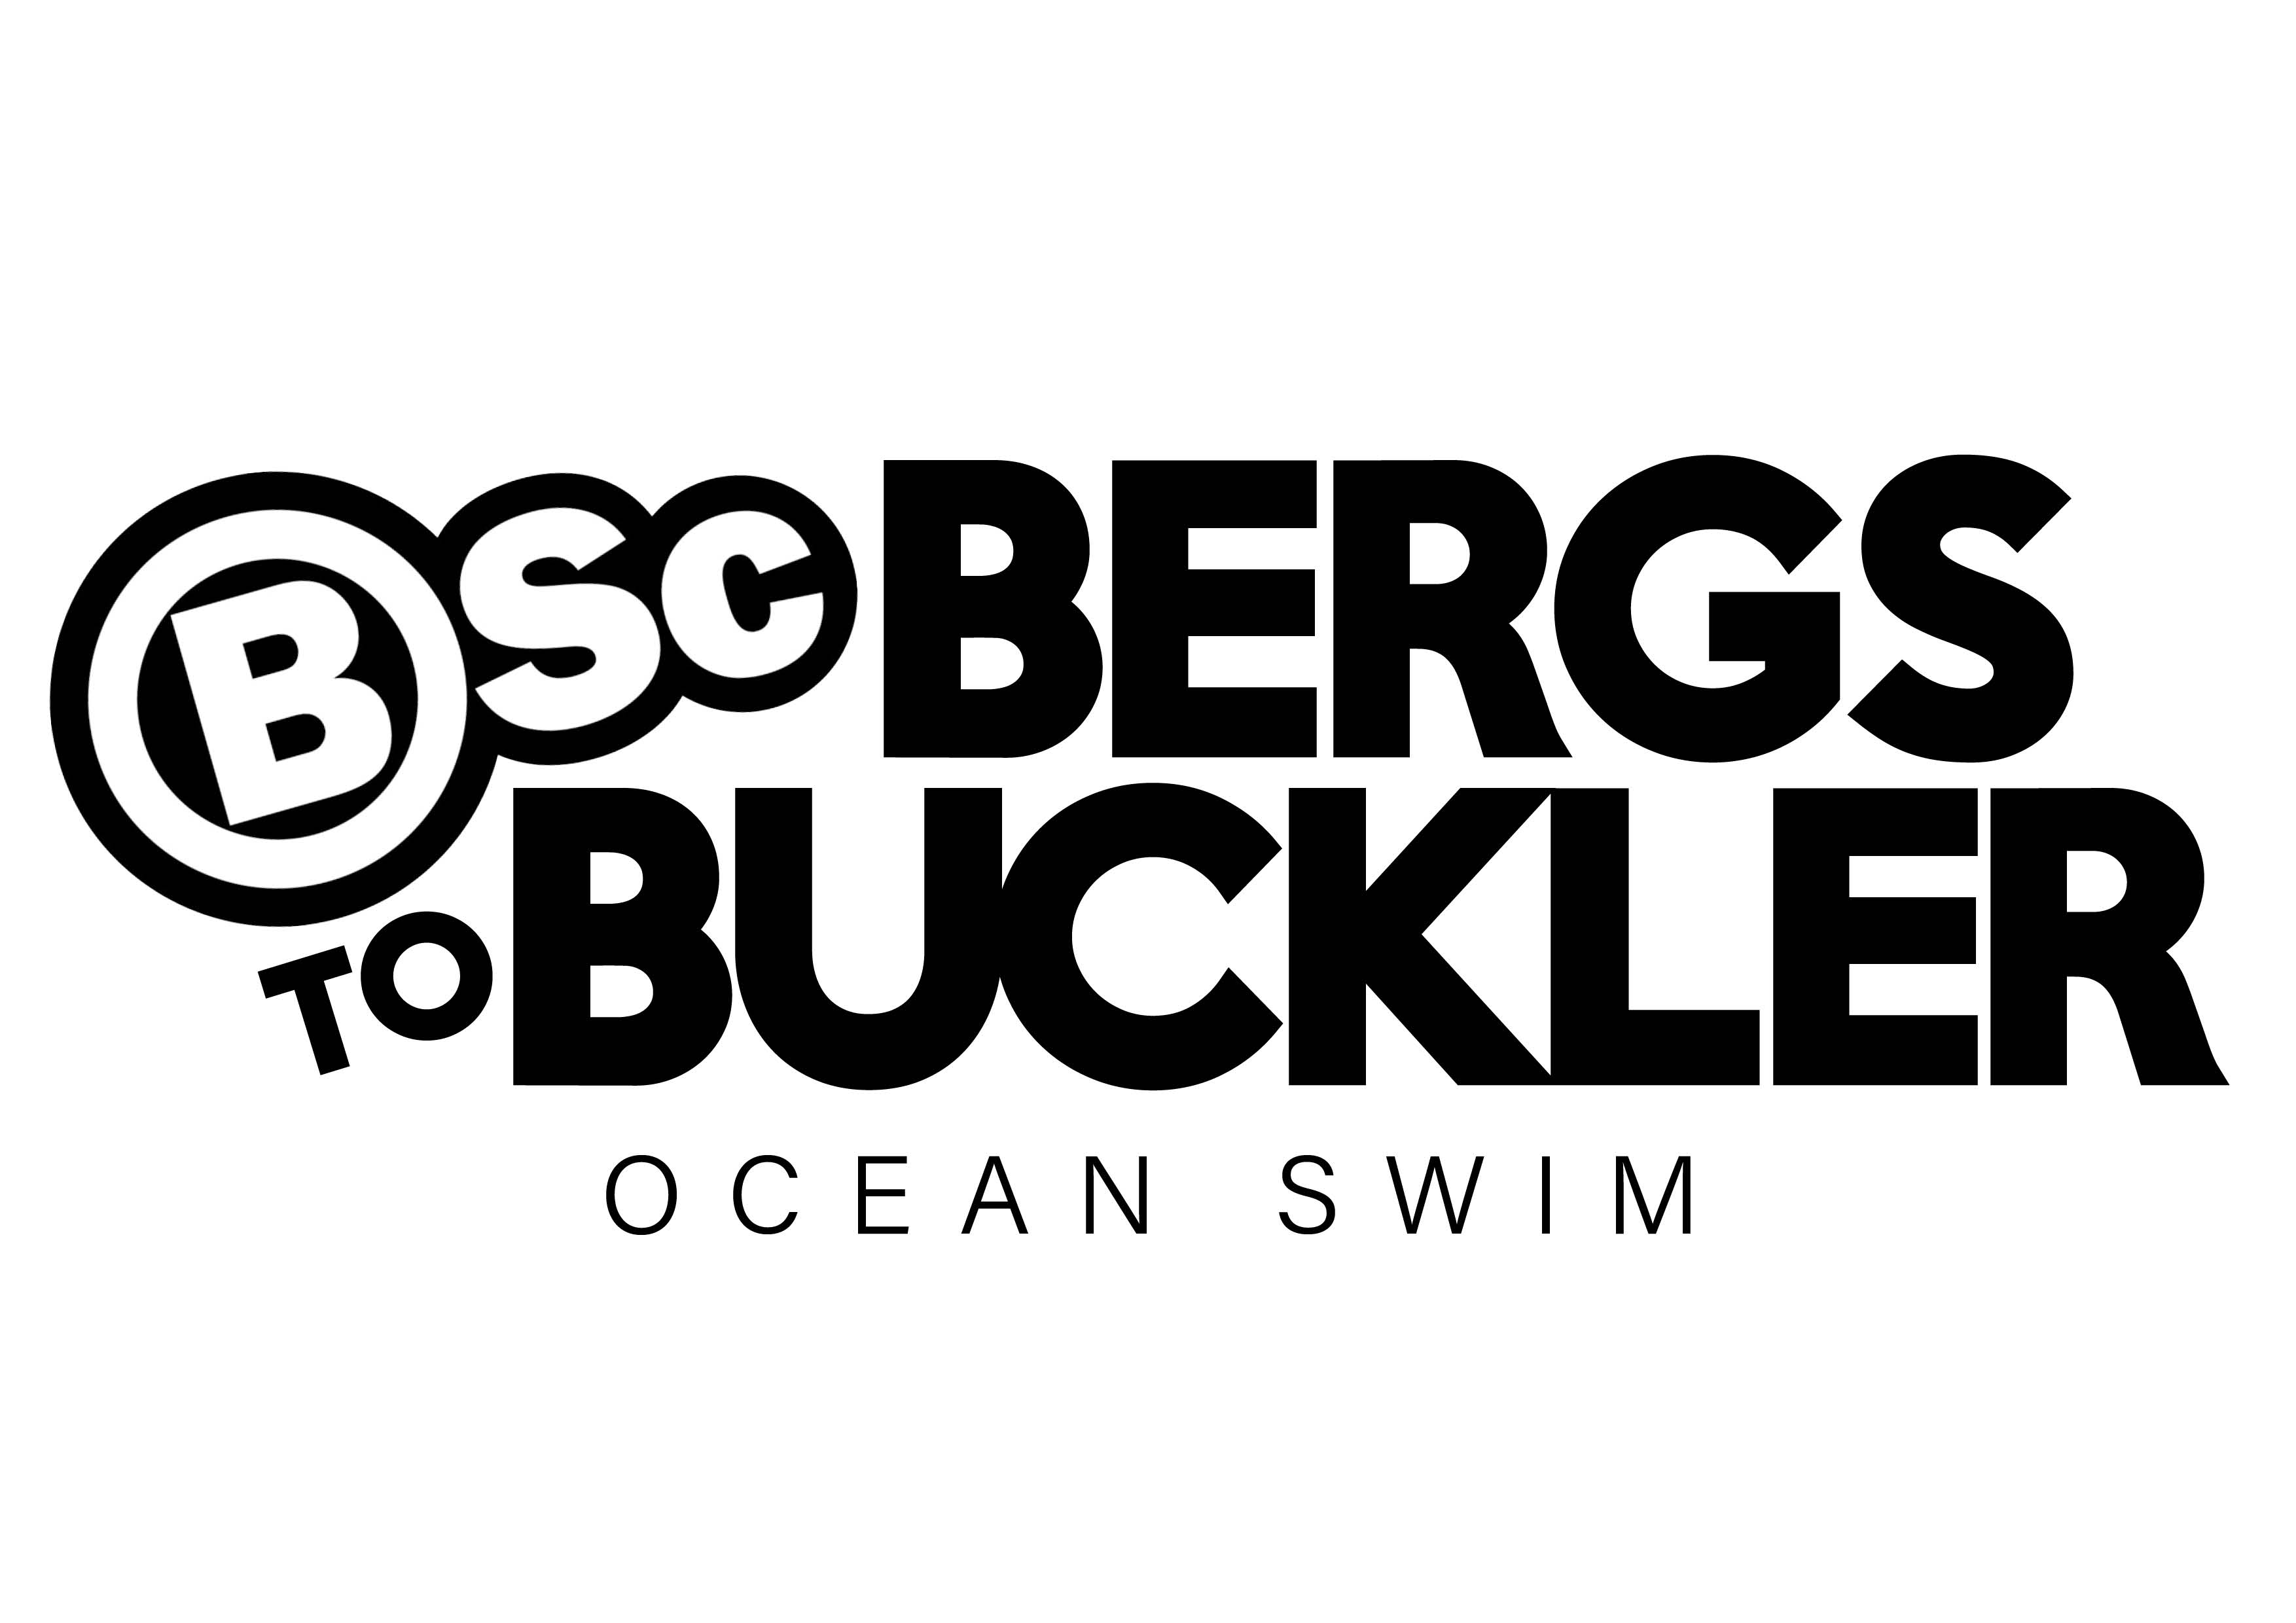 BSC Bergs to Buckler Ocean Swim Logo